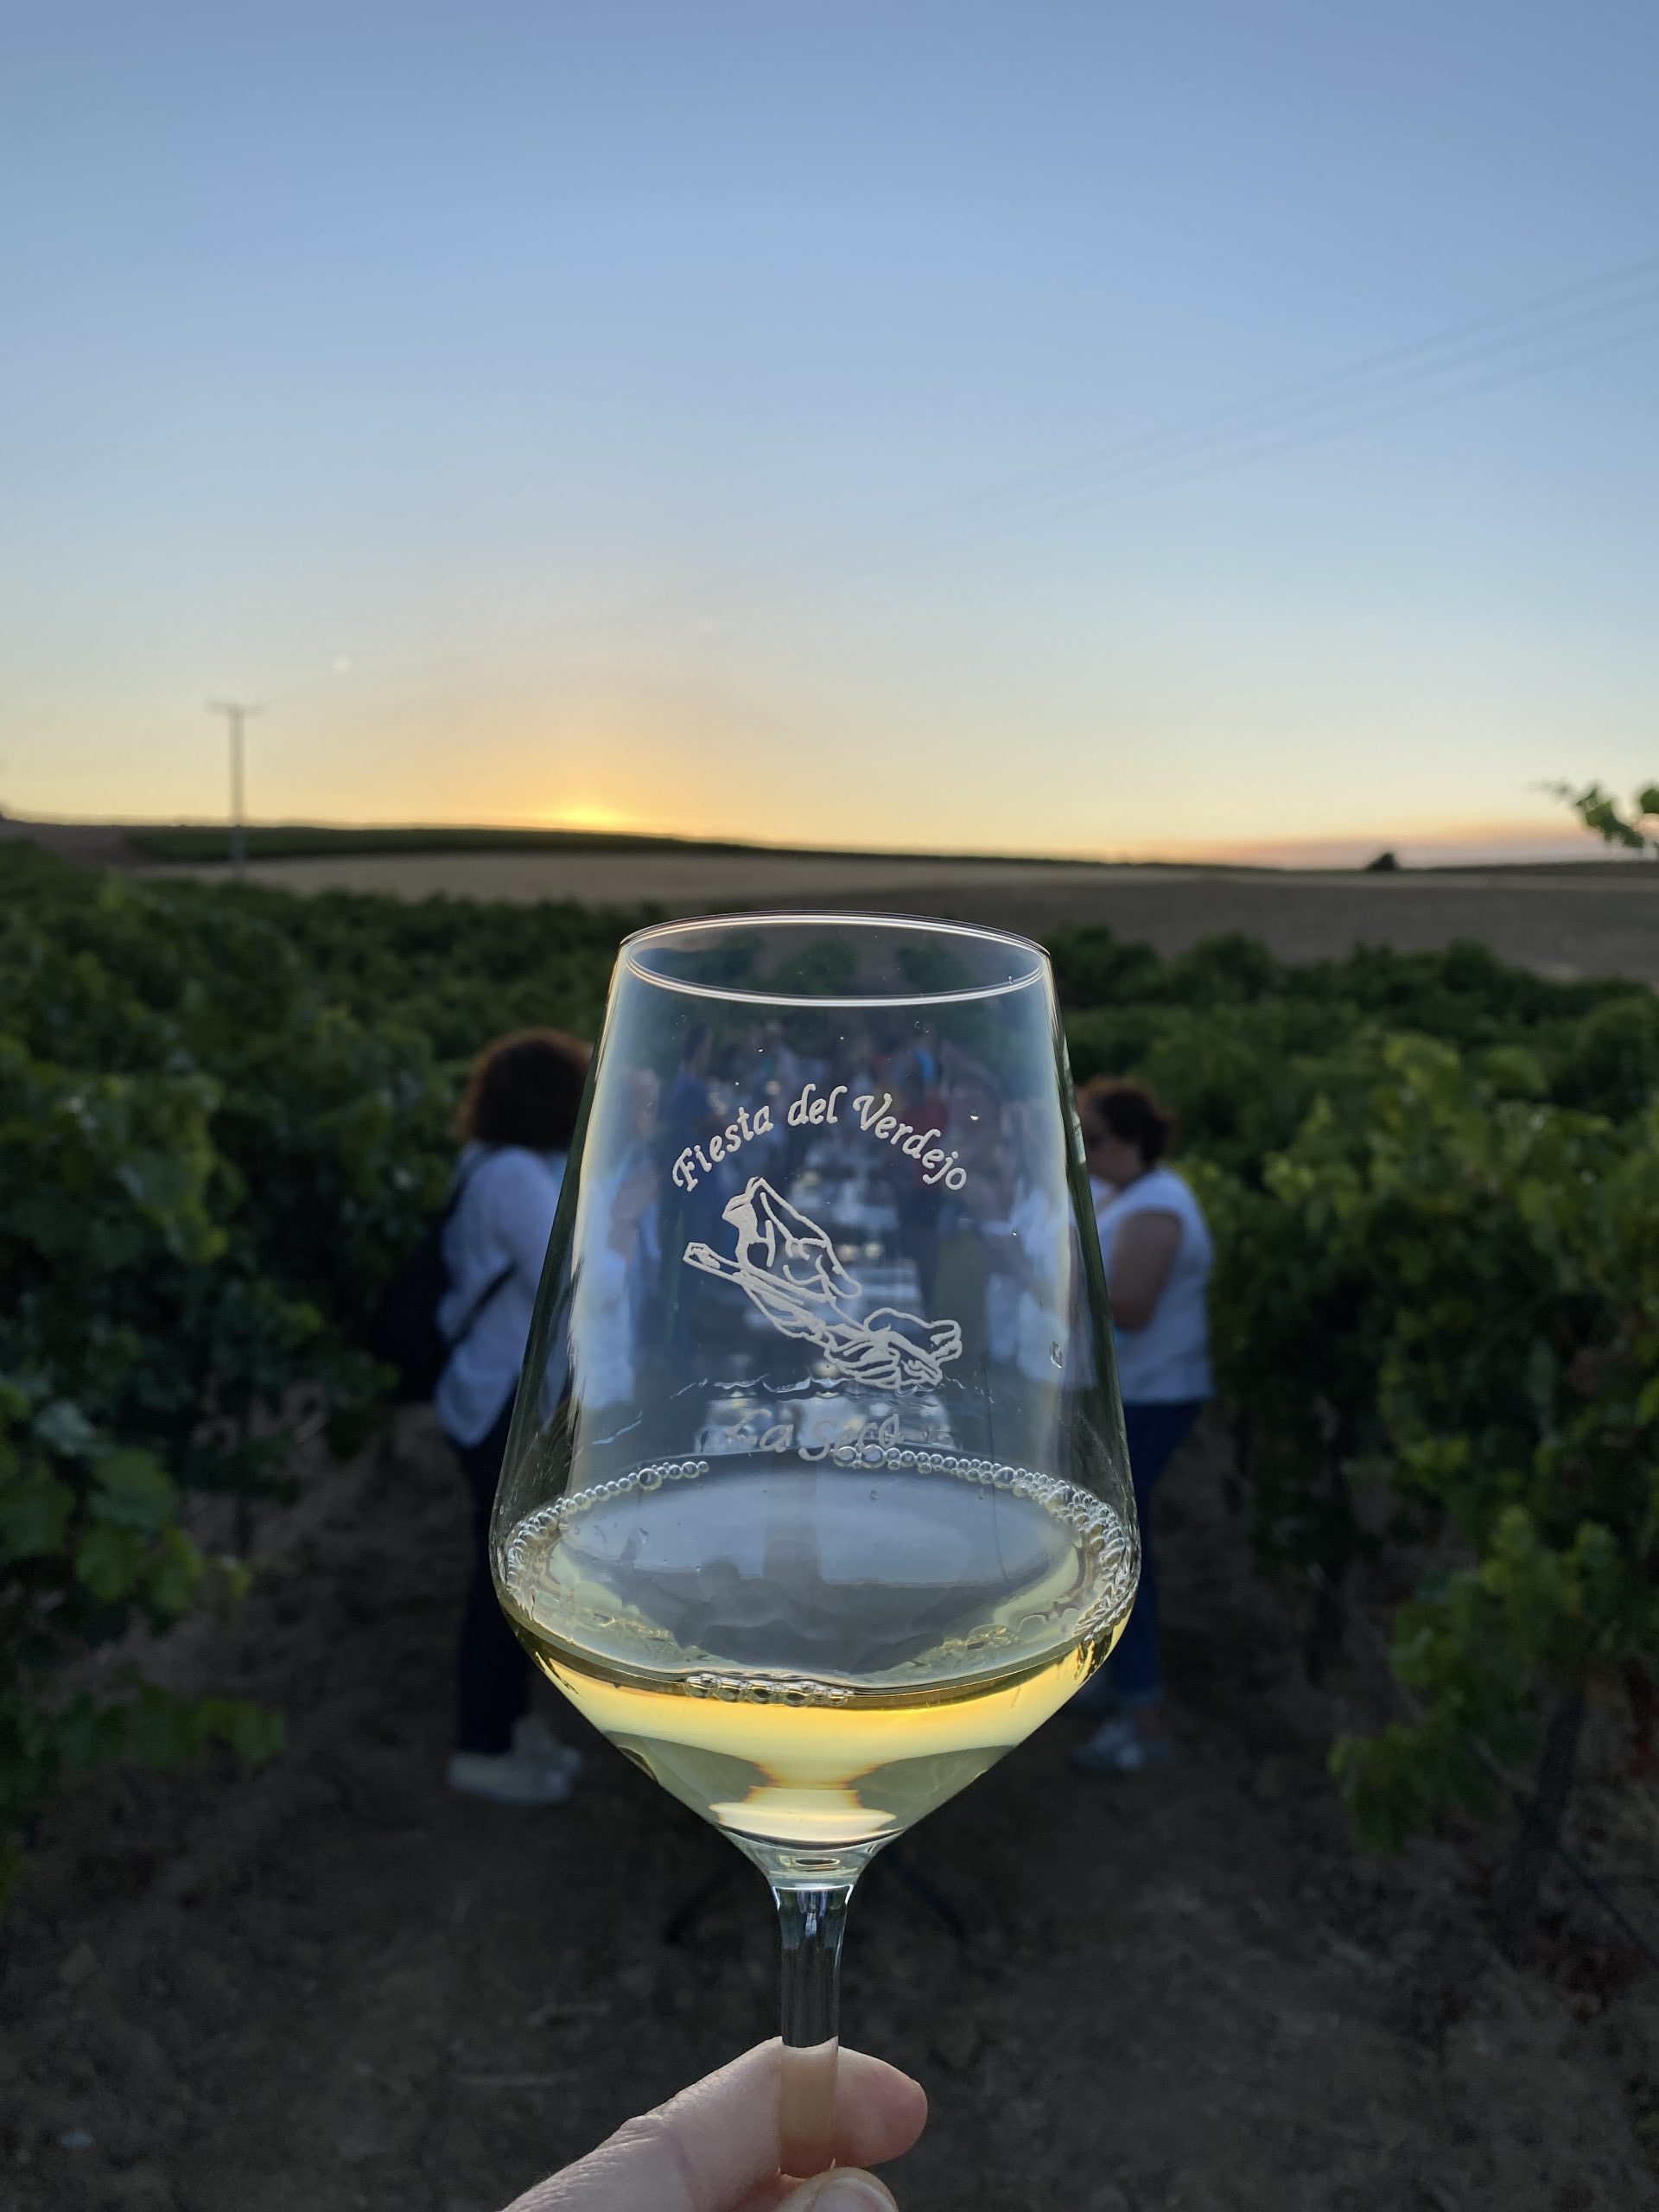 La fiesta del Verdejo regresa a La Seca con su homenaje a esta variedad y a los primeros vinos de la añada